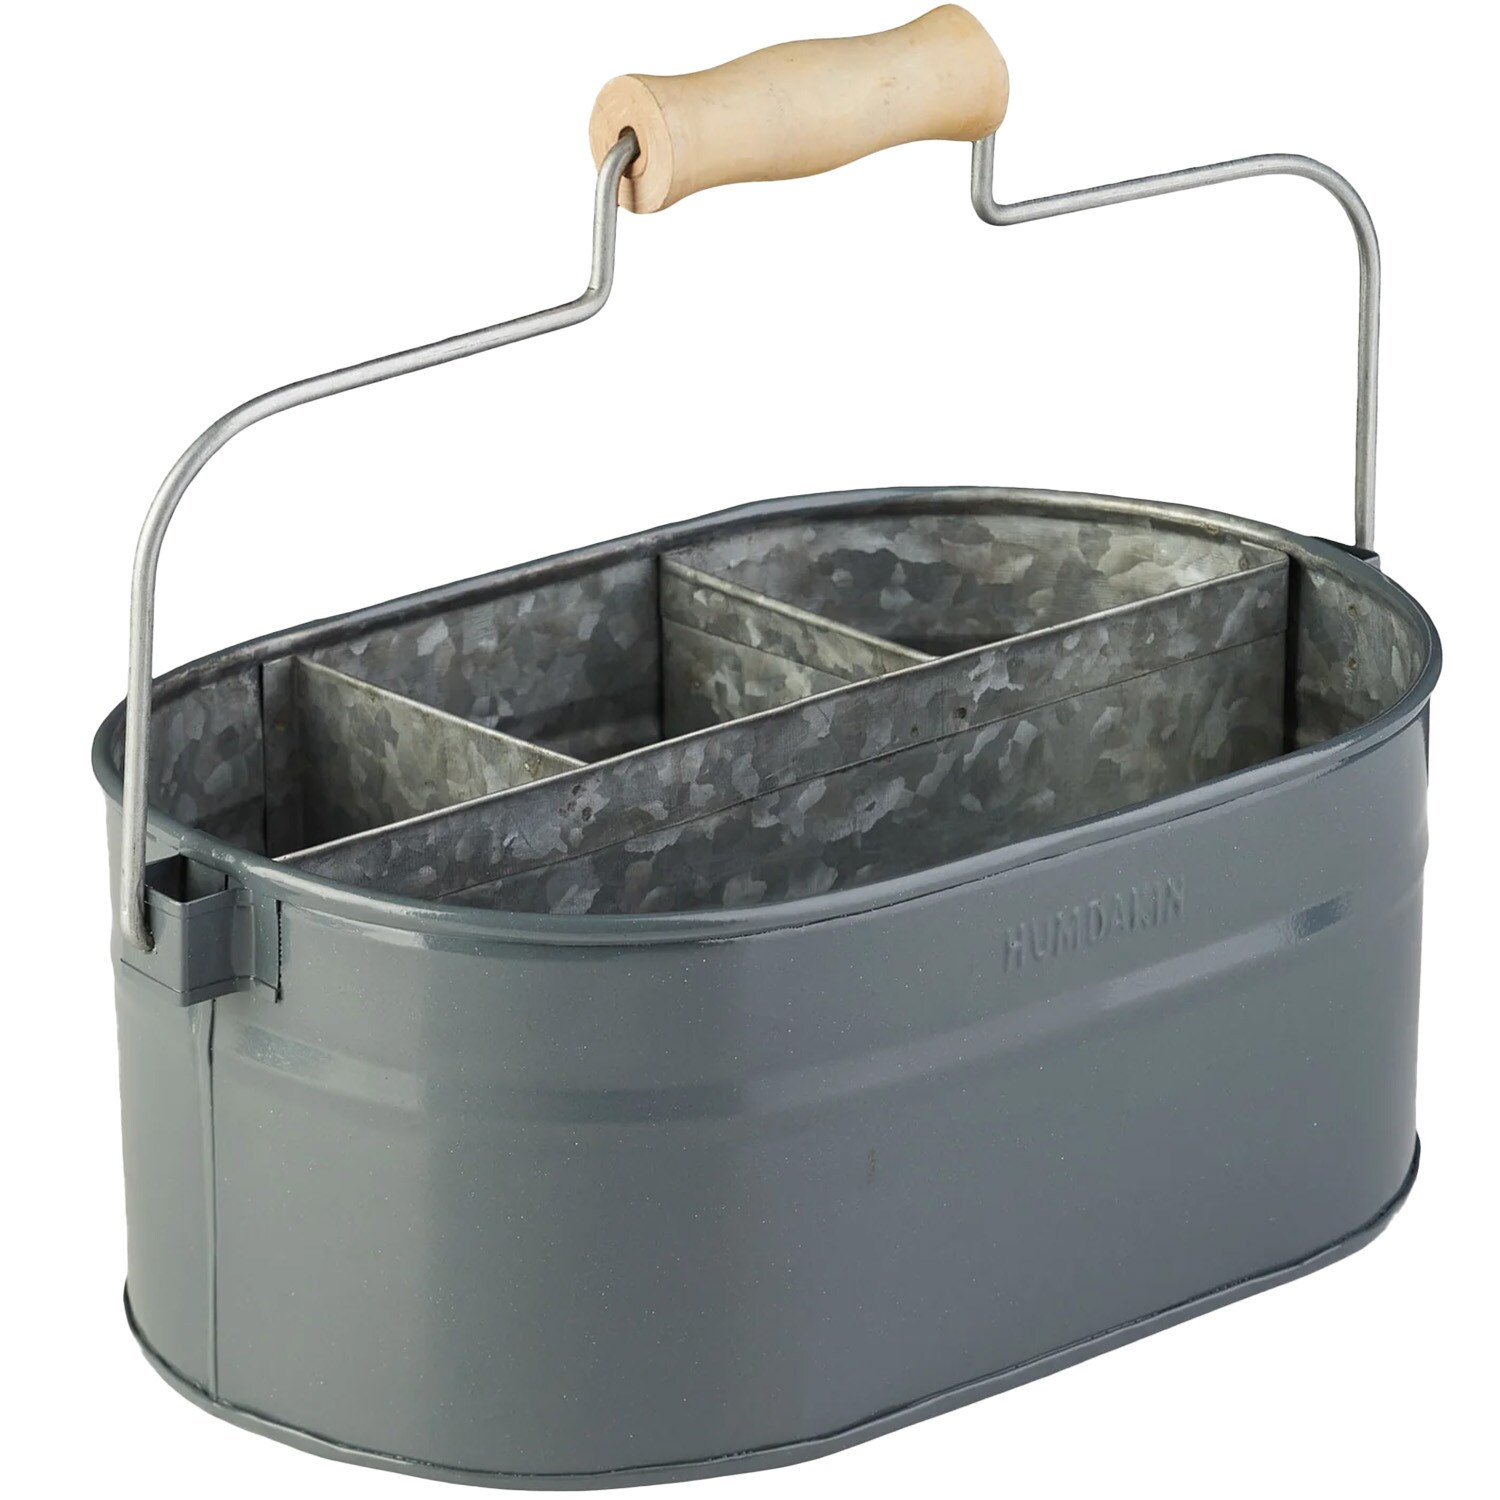 Humdakin System Bucket Förvaring - Lådor & Askar Zink Mattsvart